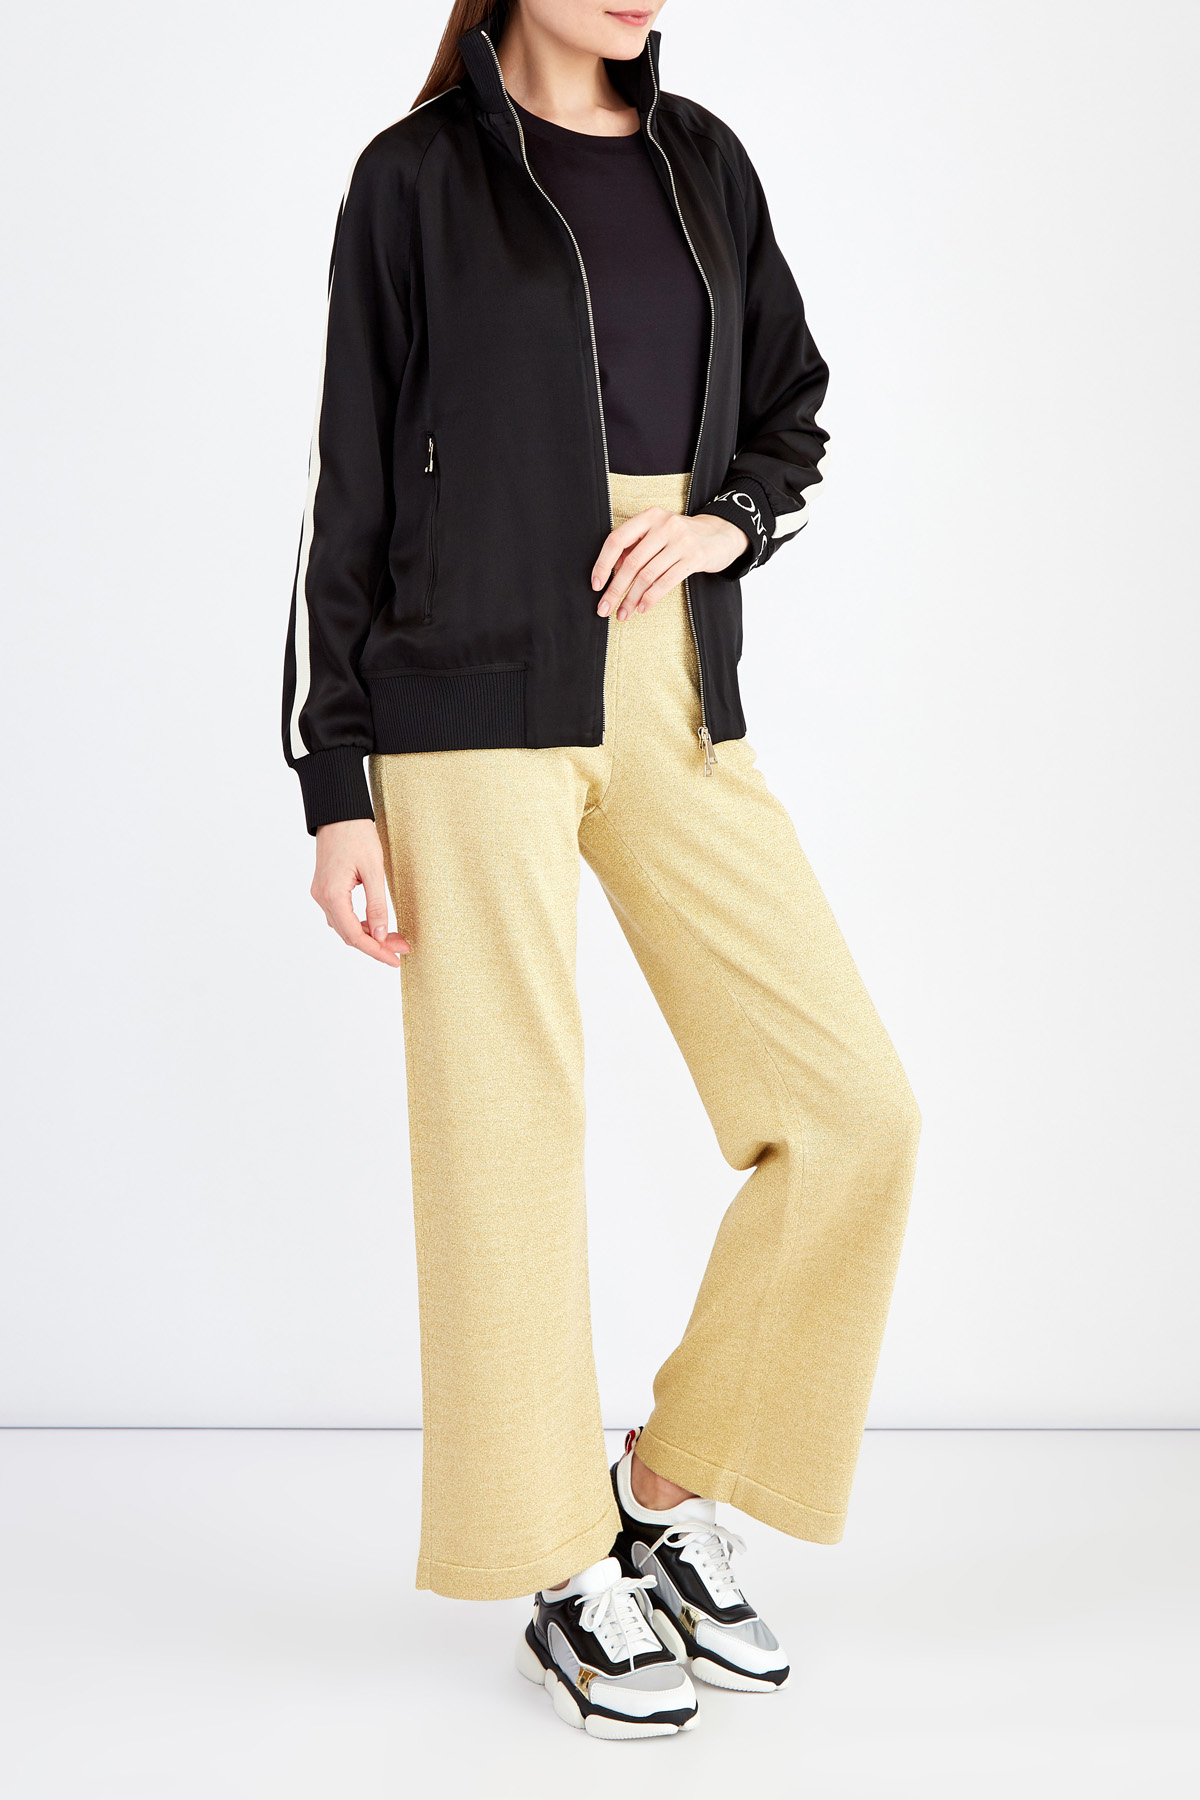 Широкие брюки из мерцающей пряжи с люрексом золотистого цвета MONCLER, размер 42 - фото 2